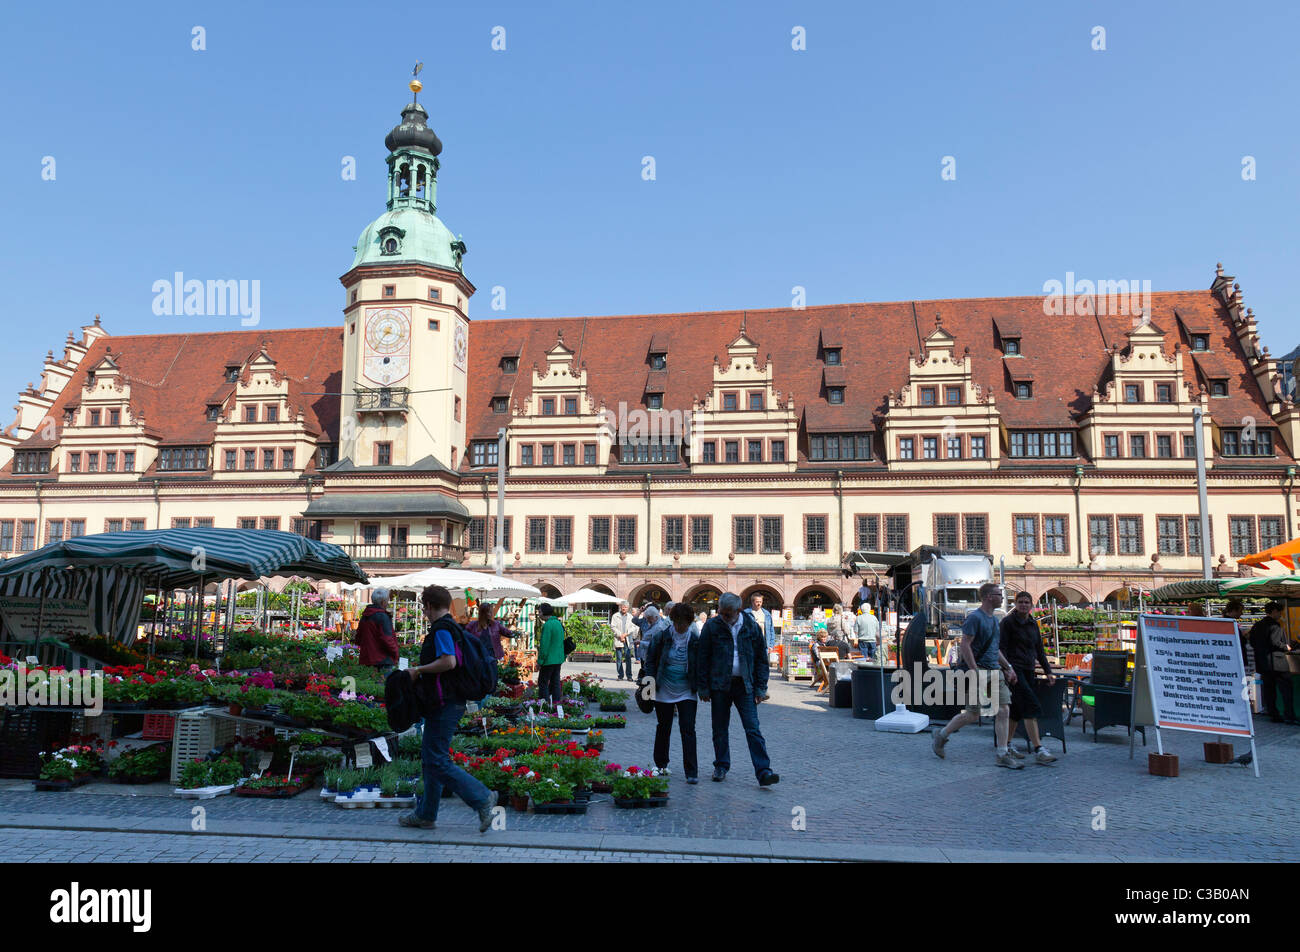 Altes Rathaus, Leipzig, Sachsen, Deutschland Stockfoto